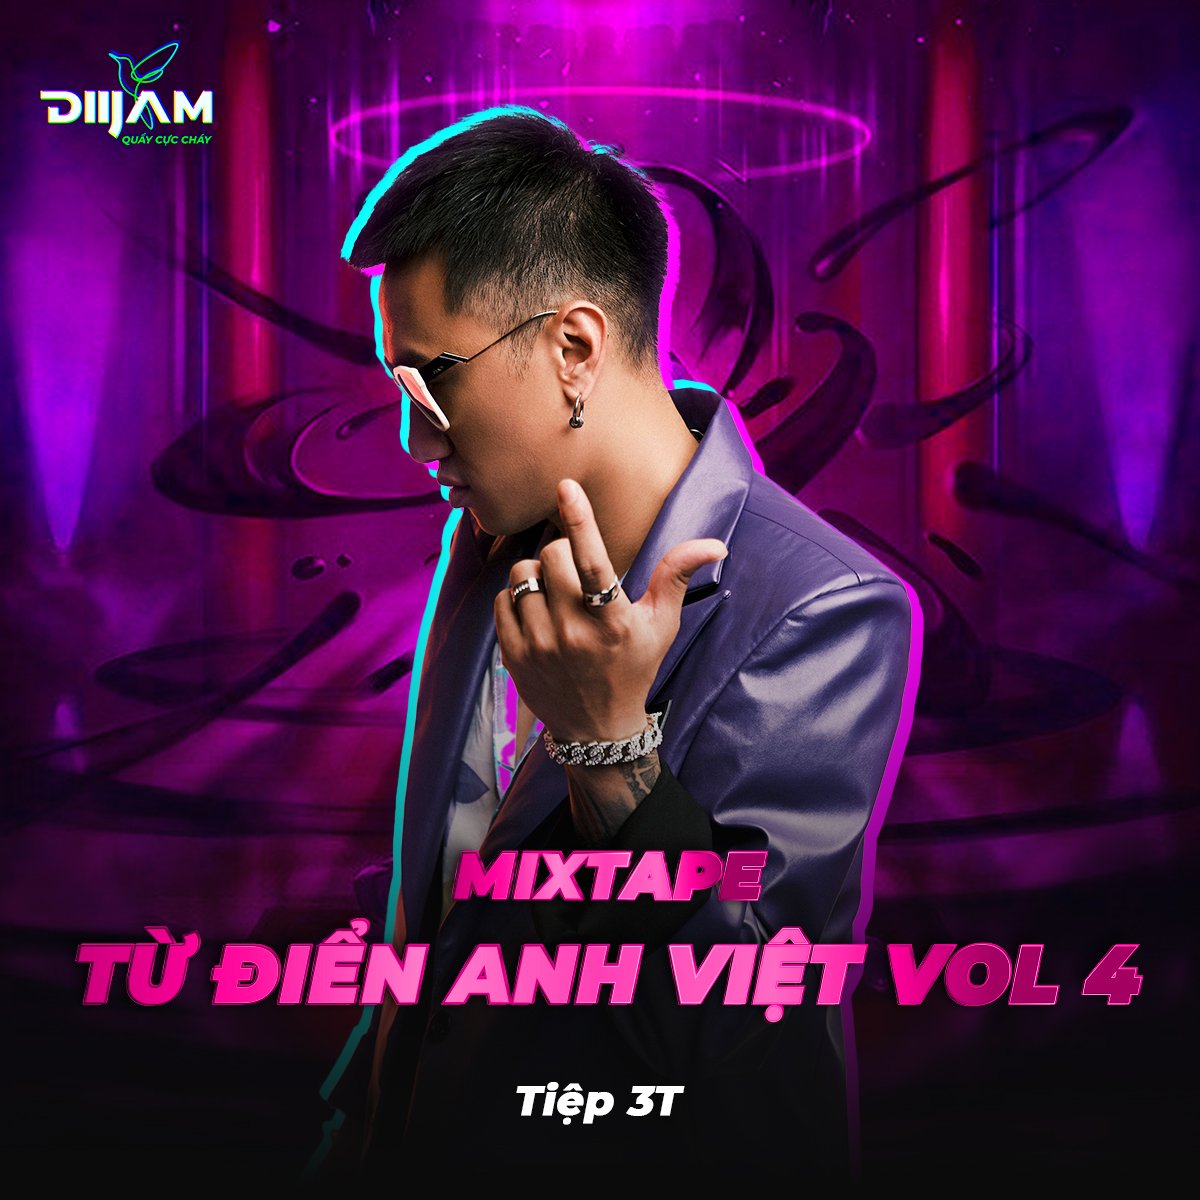 பதிவிறக்க Tamil Mixtape - Tu Dien Anh Viet Vol4 - Mixed By DJ Tiep 3T